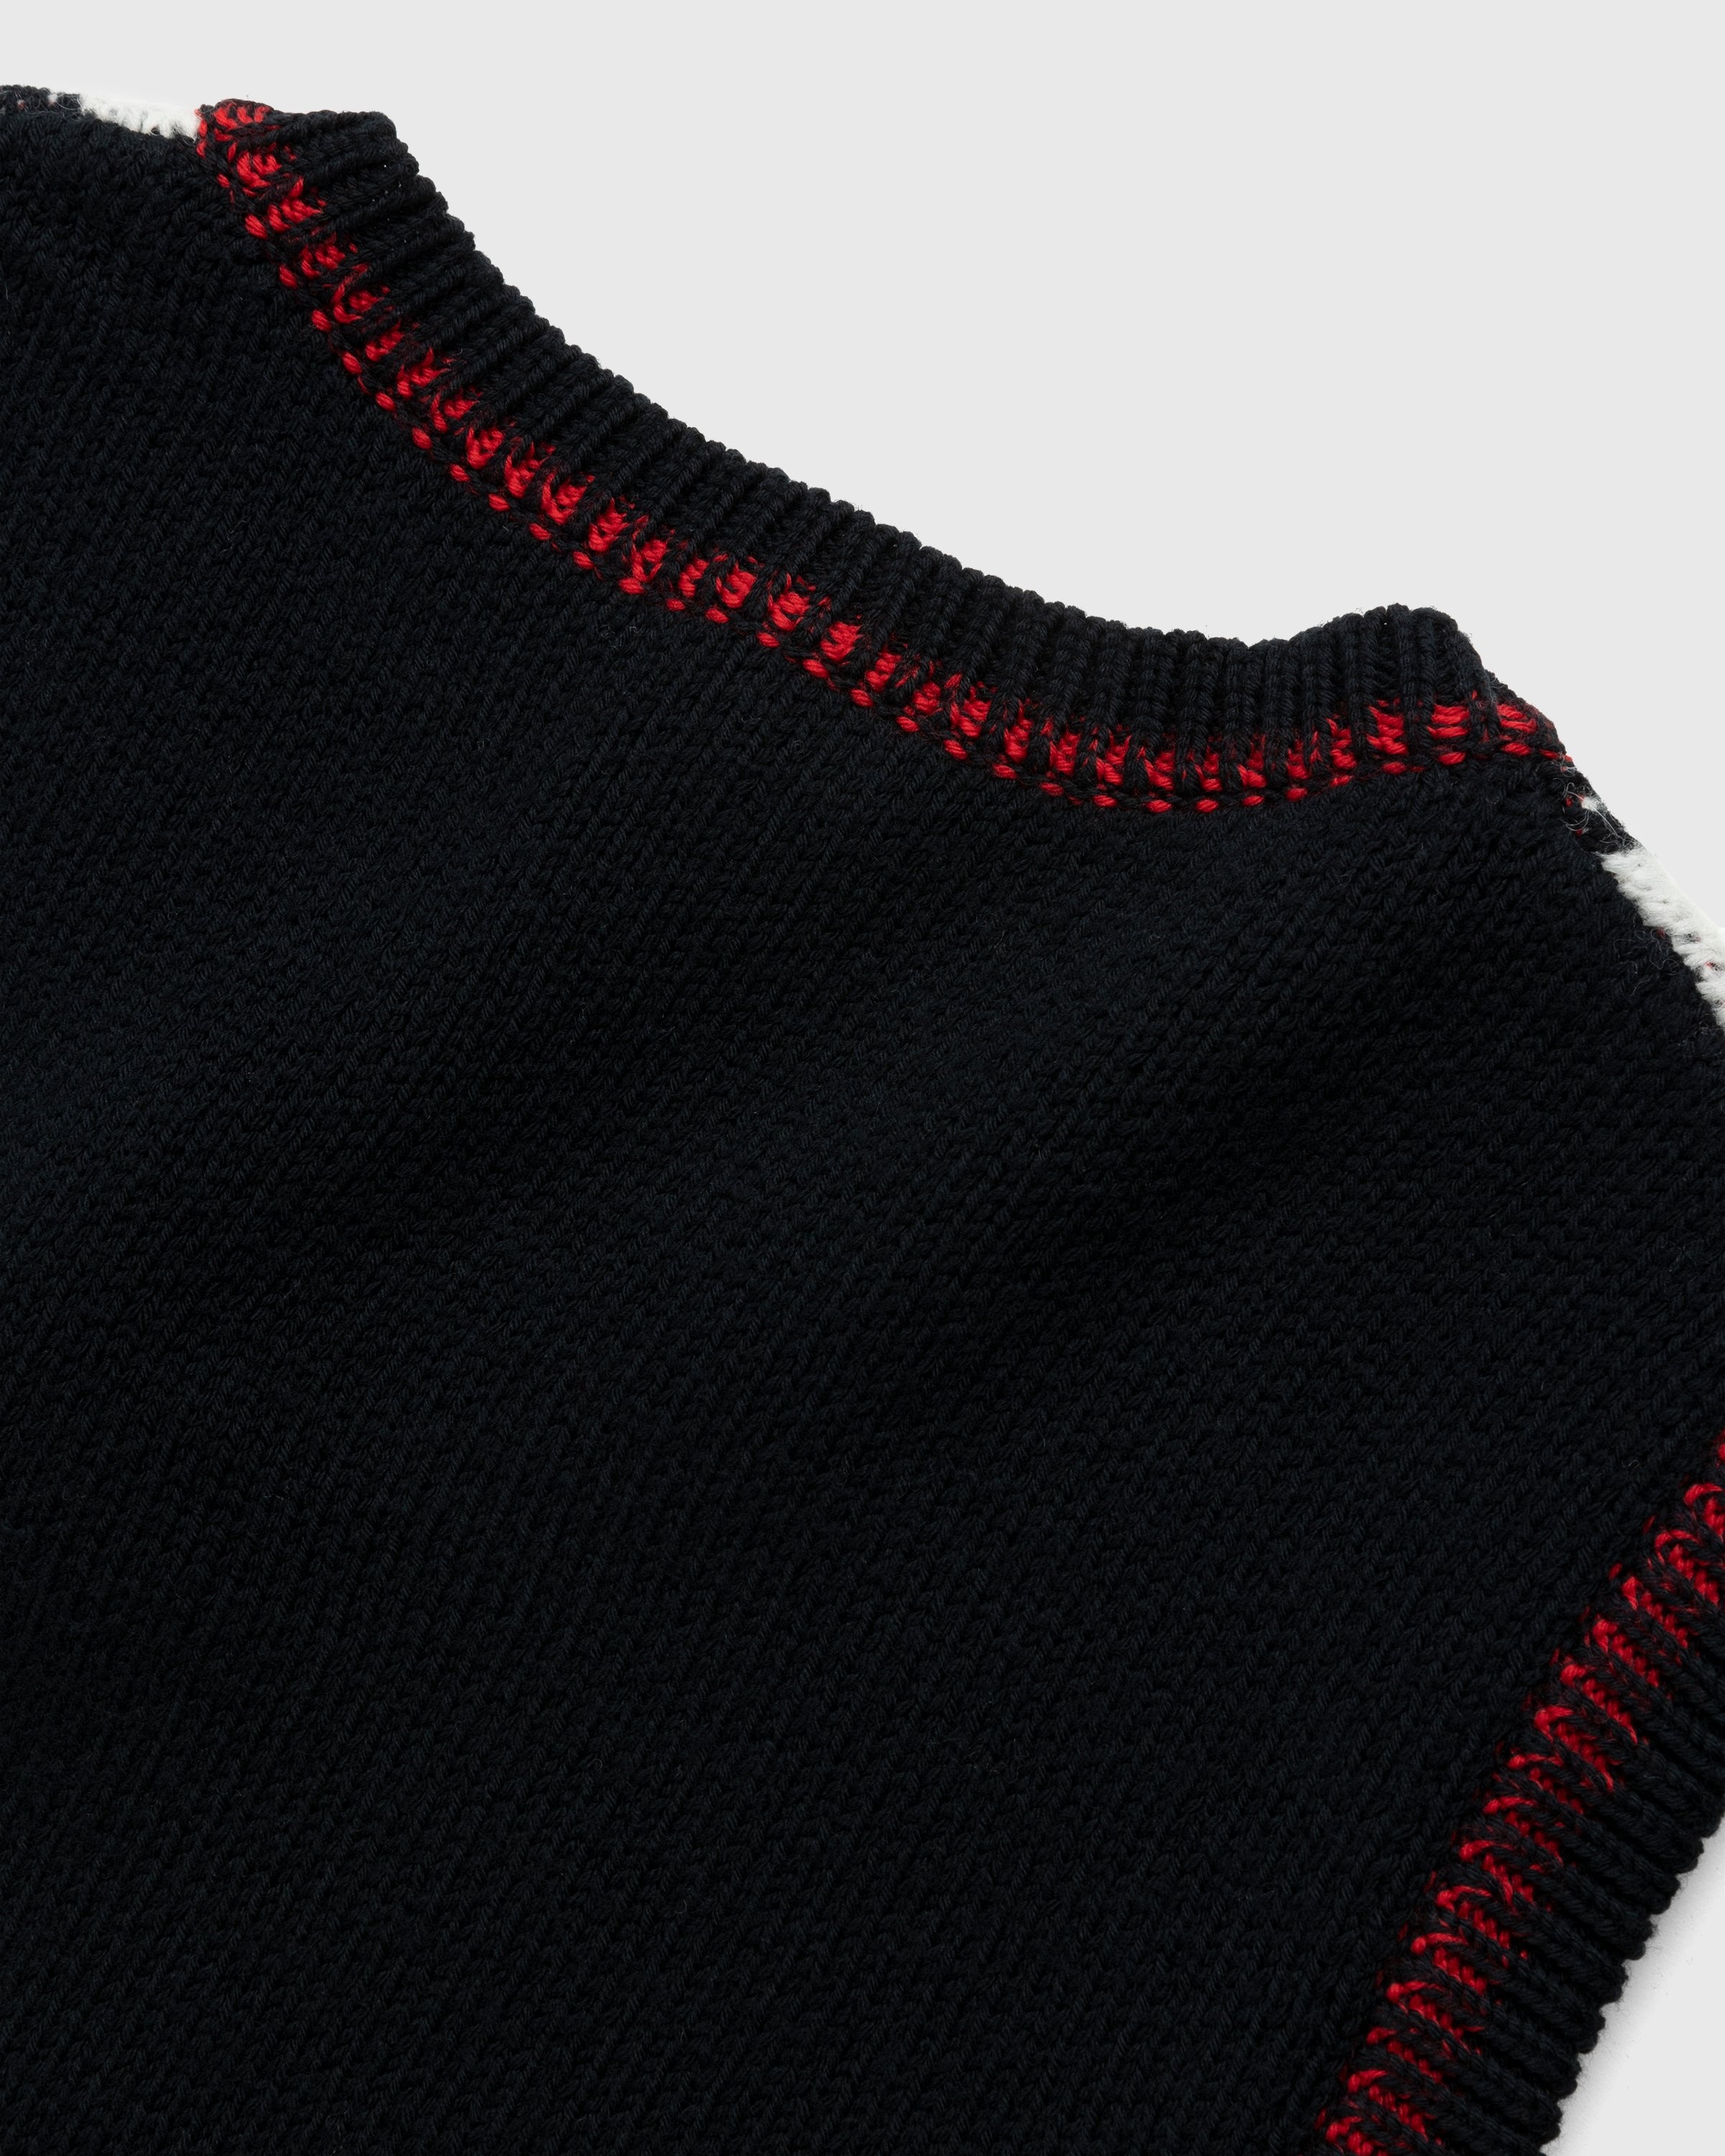 Marine Serre – Harlequeen Pullover V-Neck Black - Knitwear - Black - Image 3